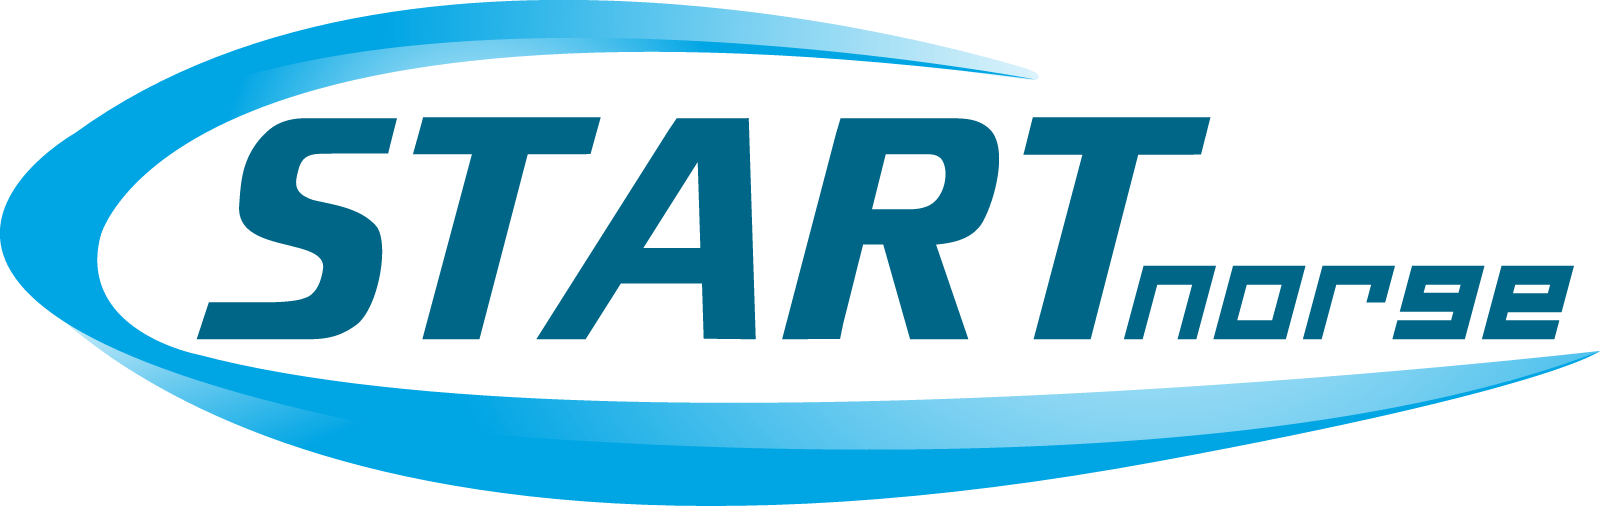 Start Logo - Start logo png 4 » PNG Image